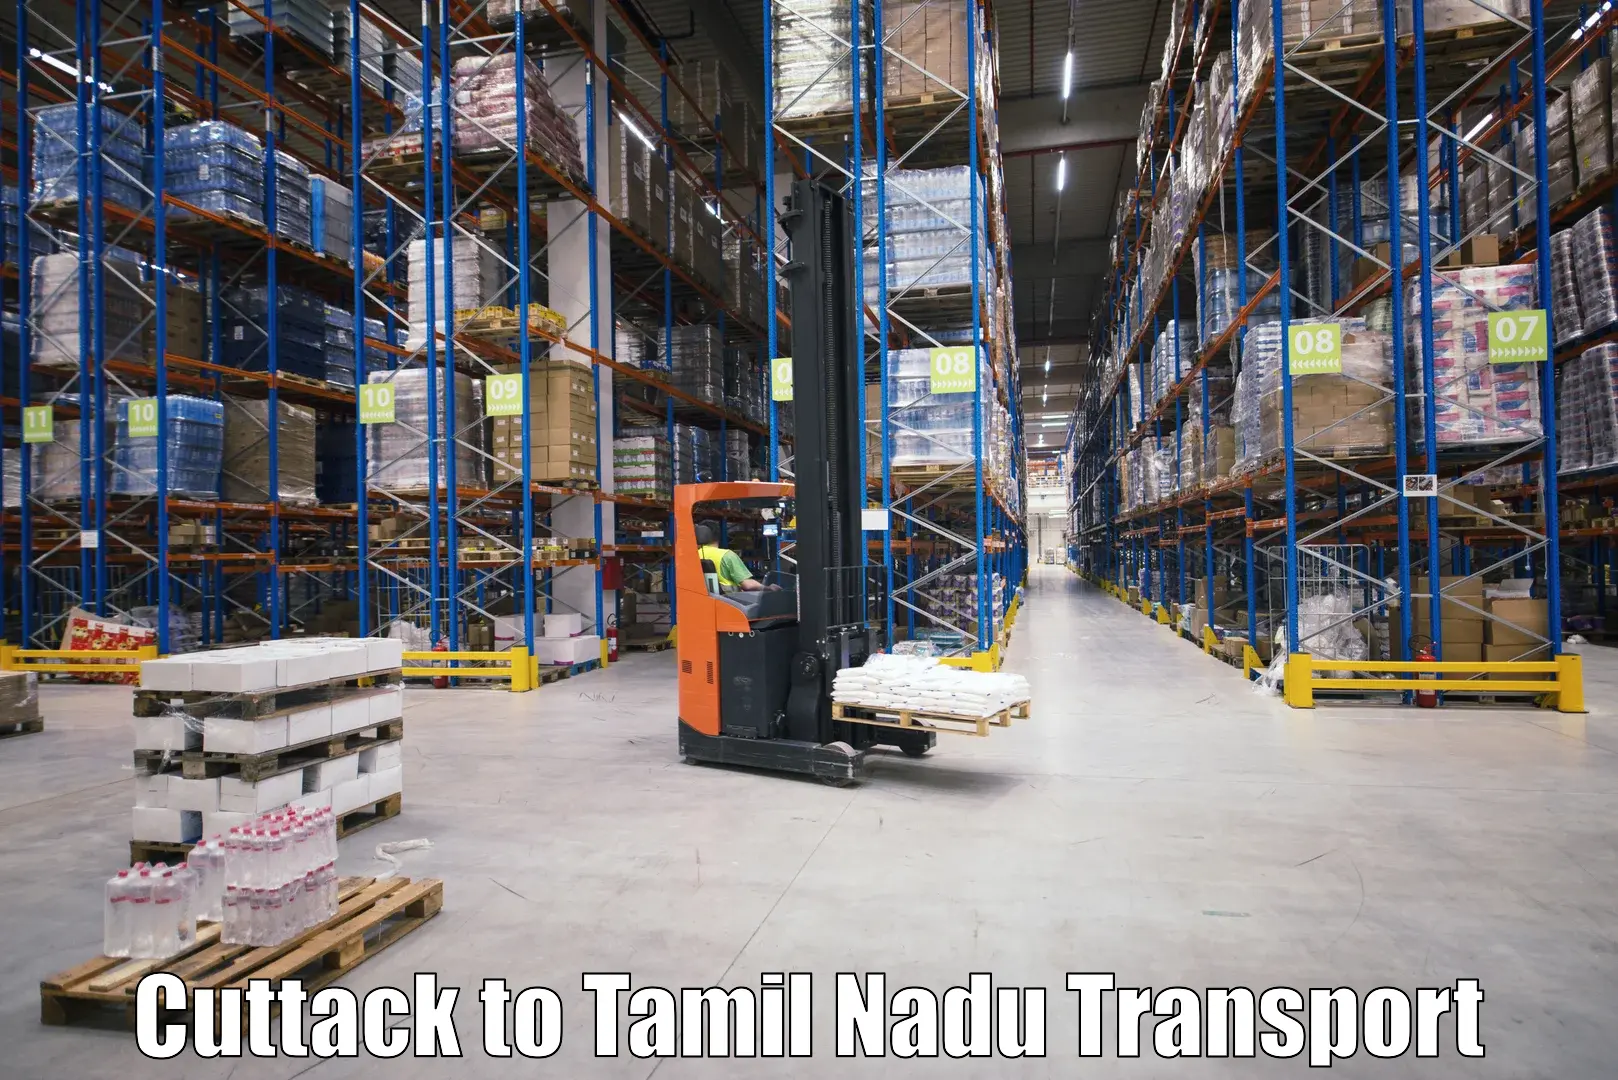 Two wheeler transport services Cuttack to Tiruturaipundi